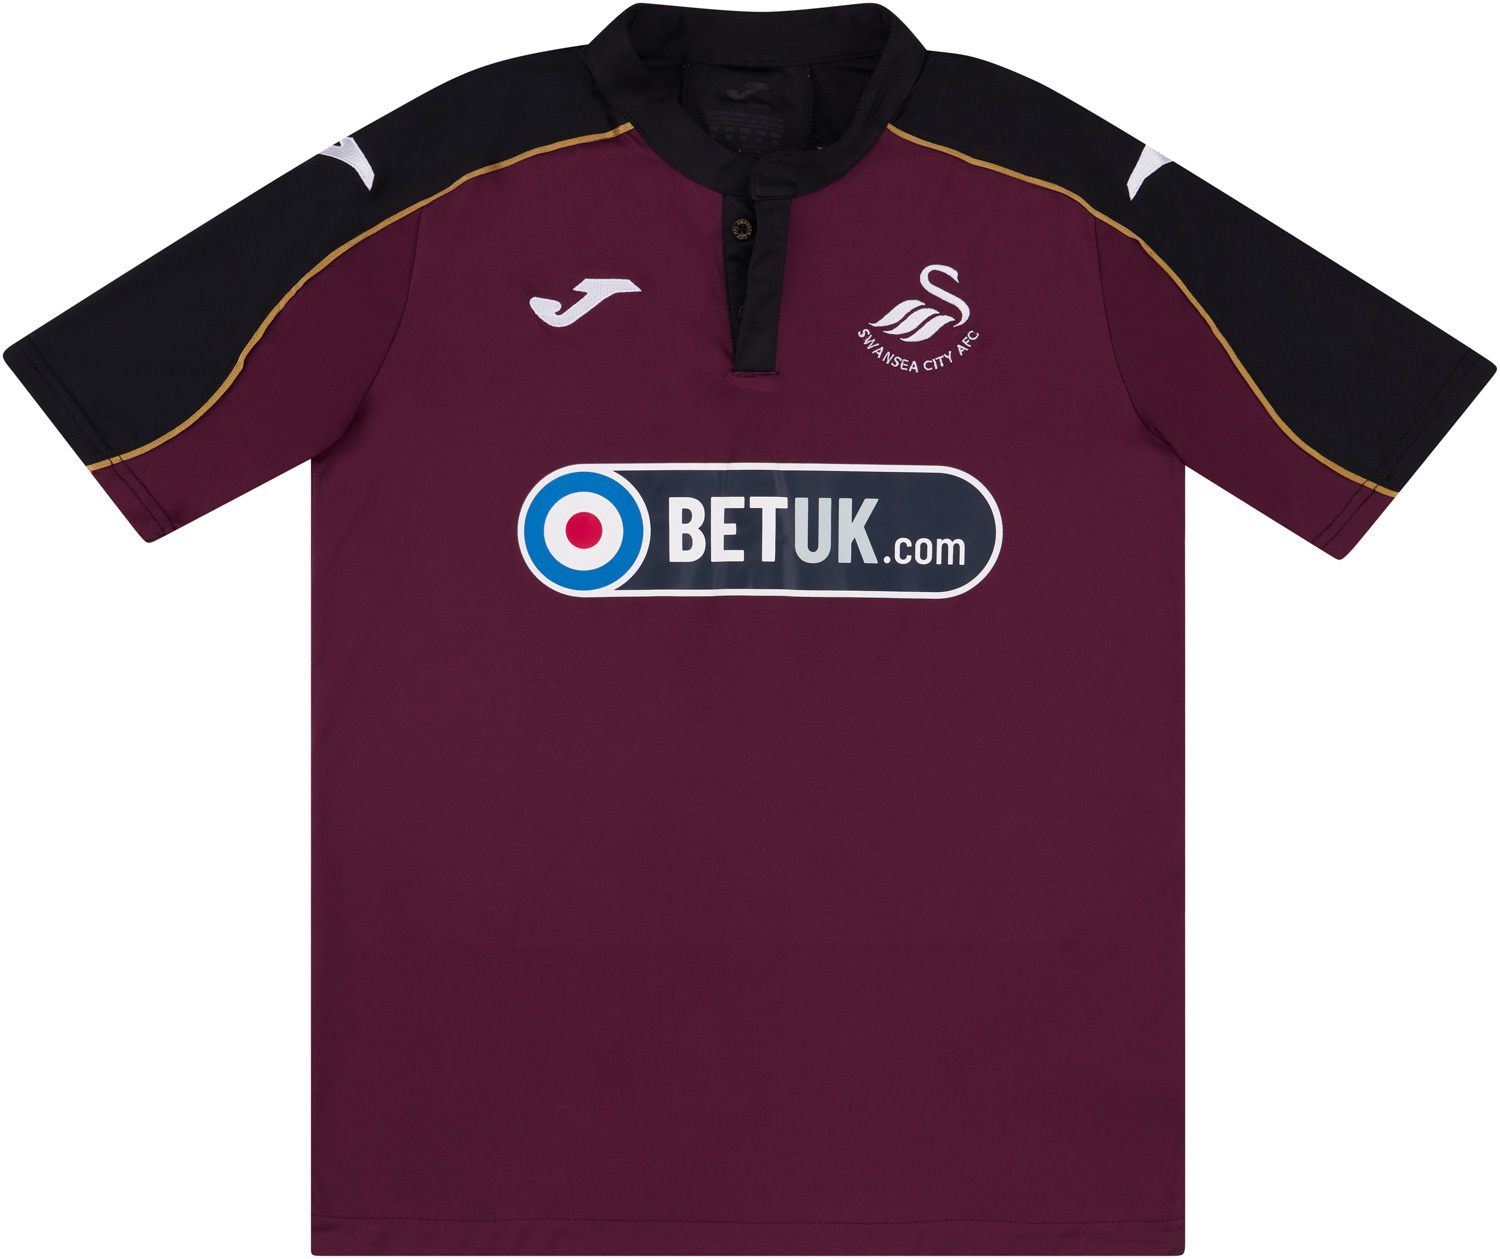 2018-19 Swansea City Third Shirt - 8/10 - ()